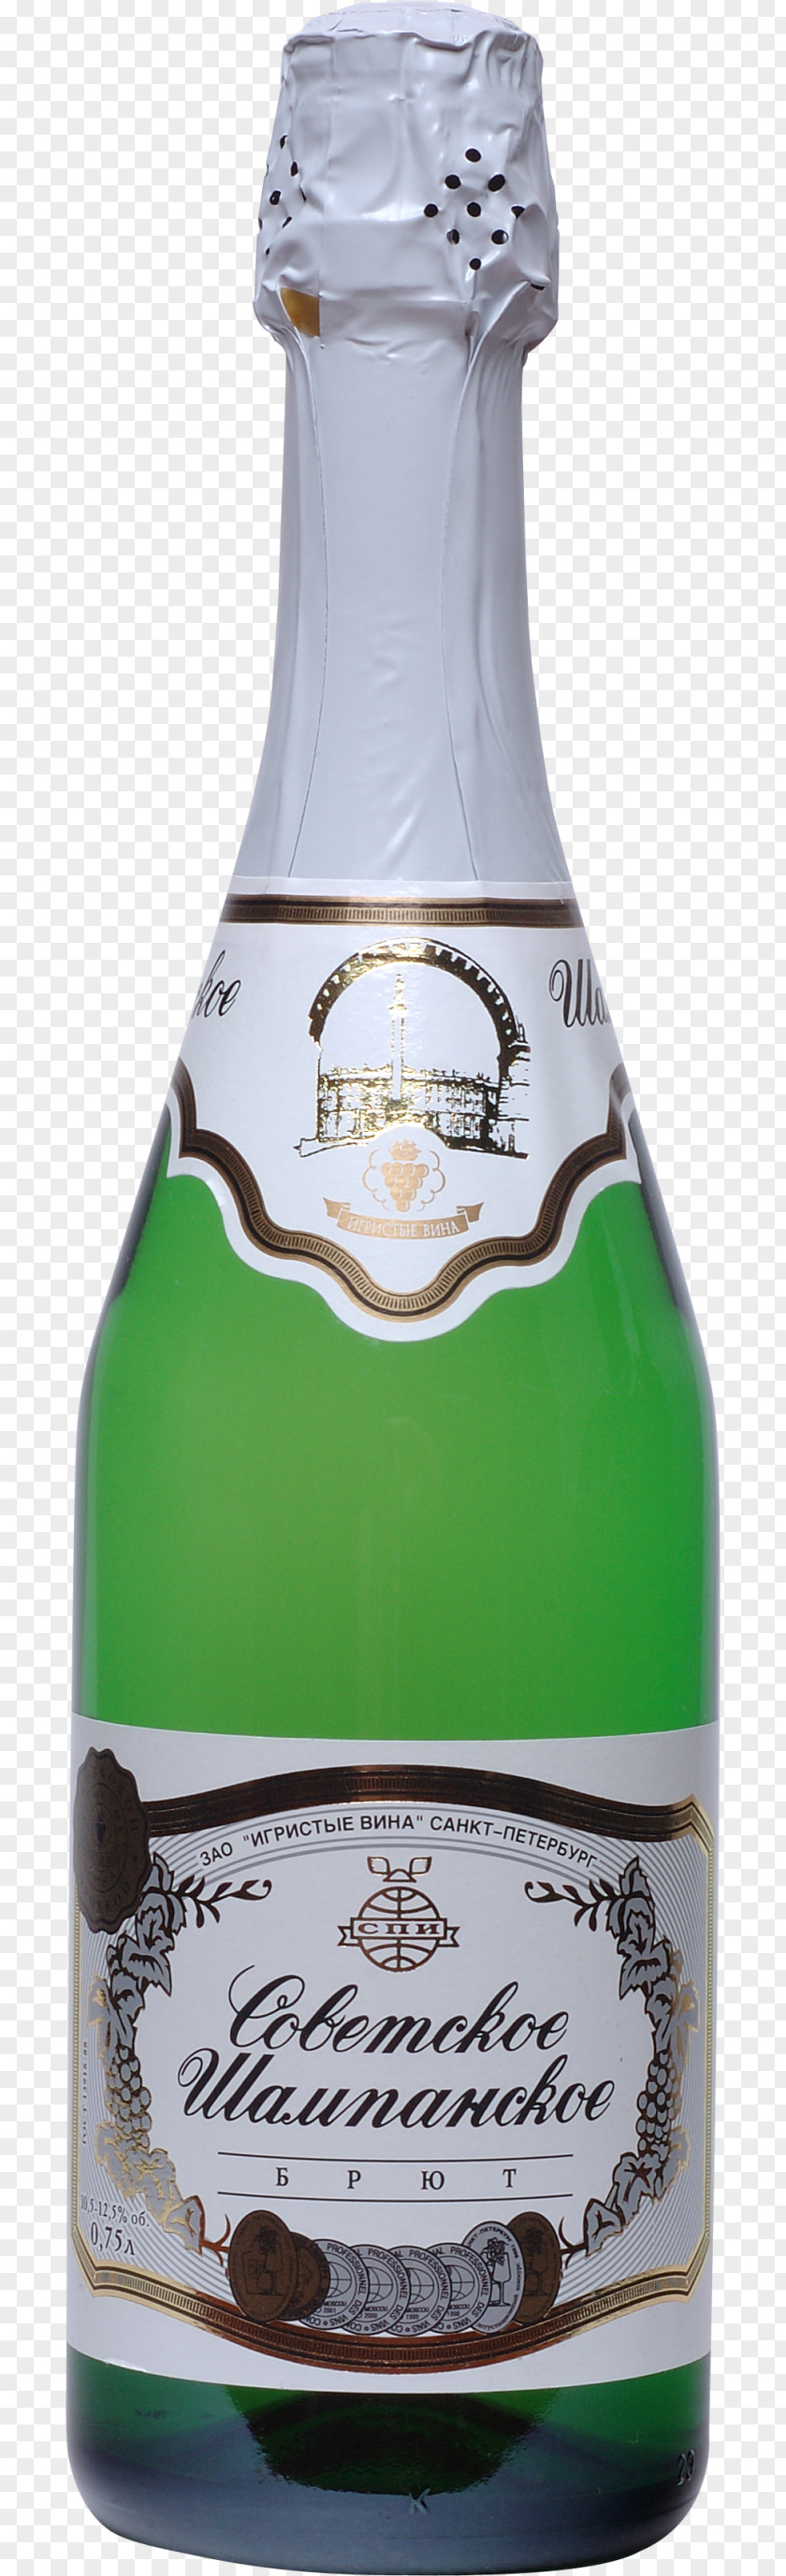 Champagne Liqueur Bottle Clip Art PNG